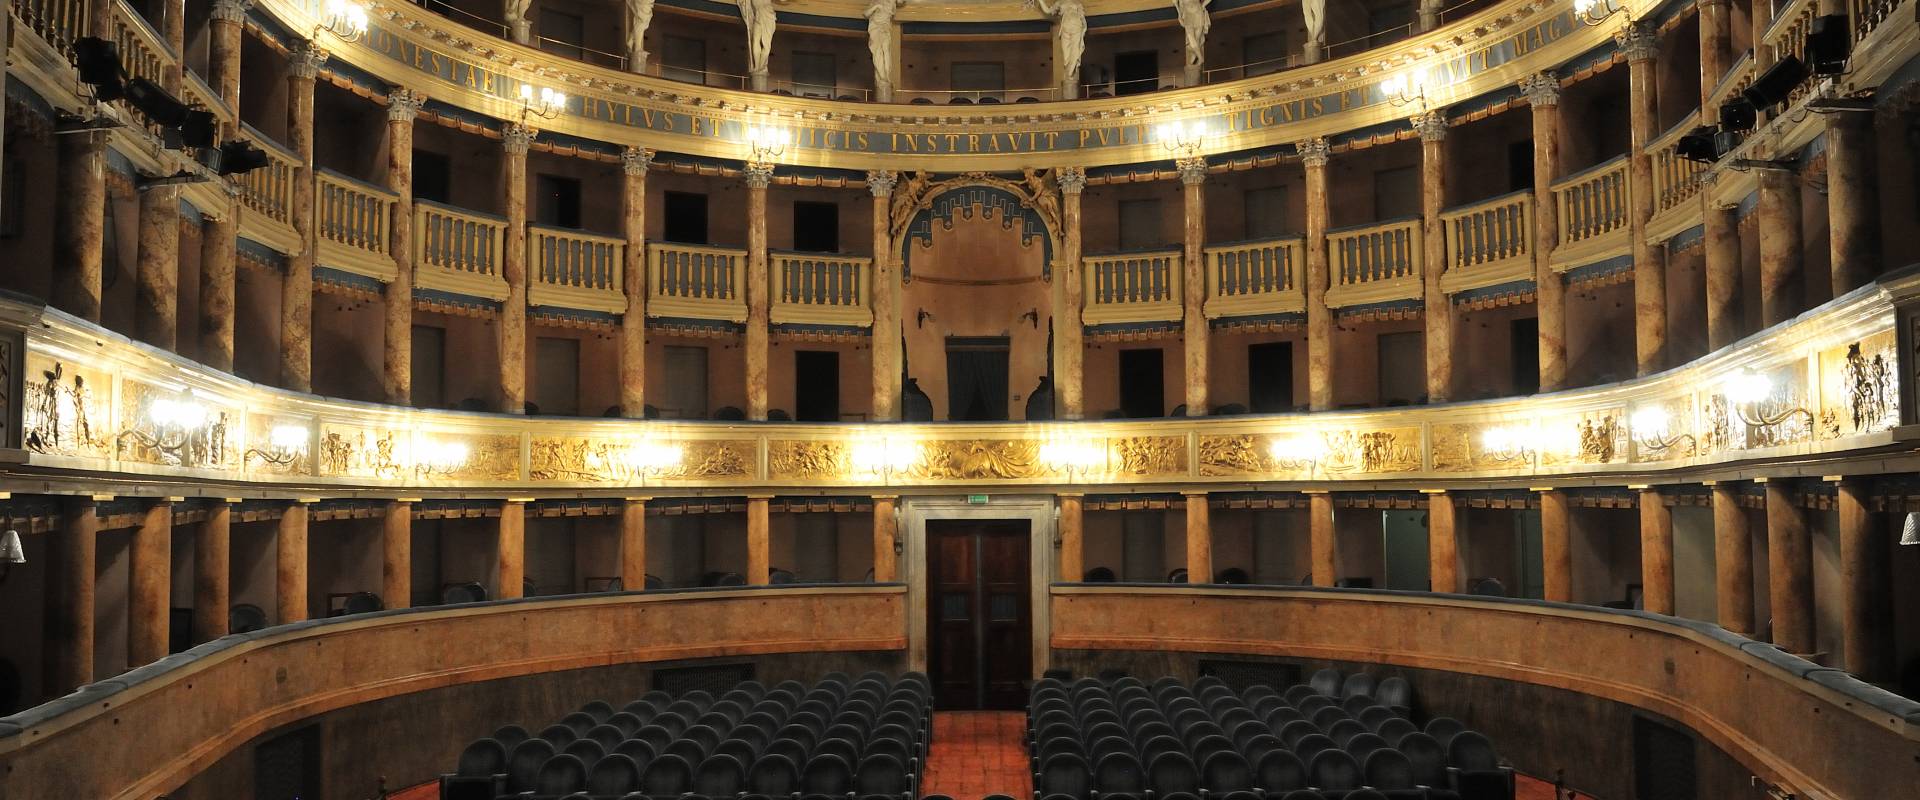 Teatro Comunale Angelo Masini - Comune di Faenza 02 photo by Lorenzo Gaudenzi